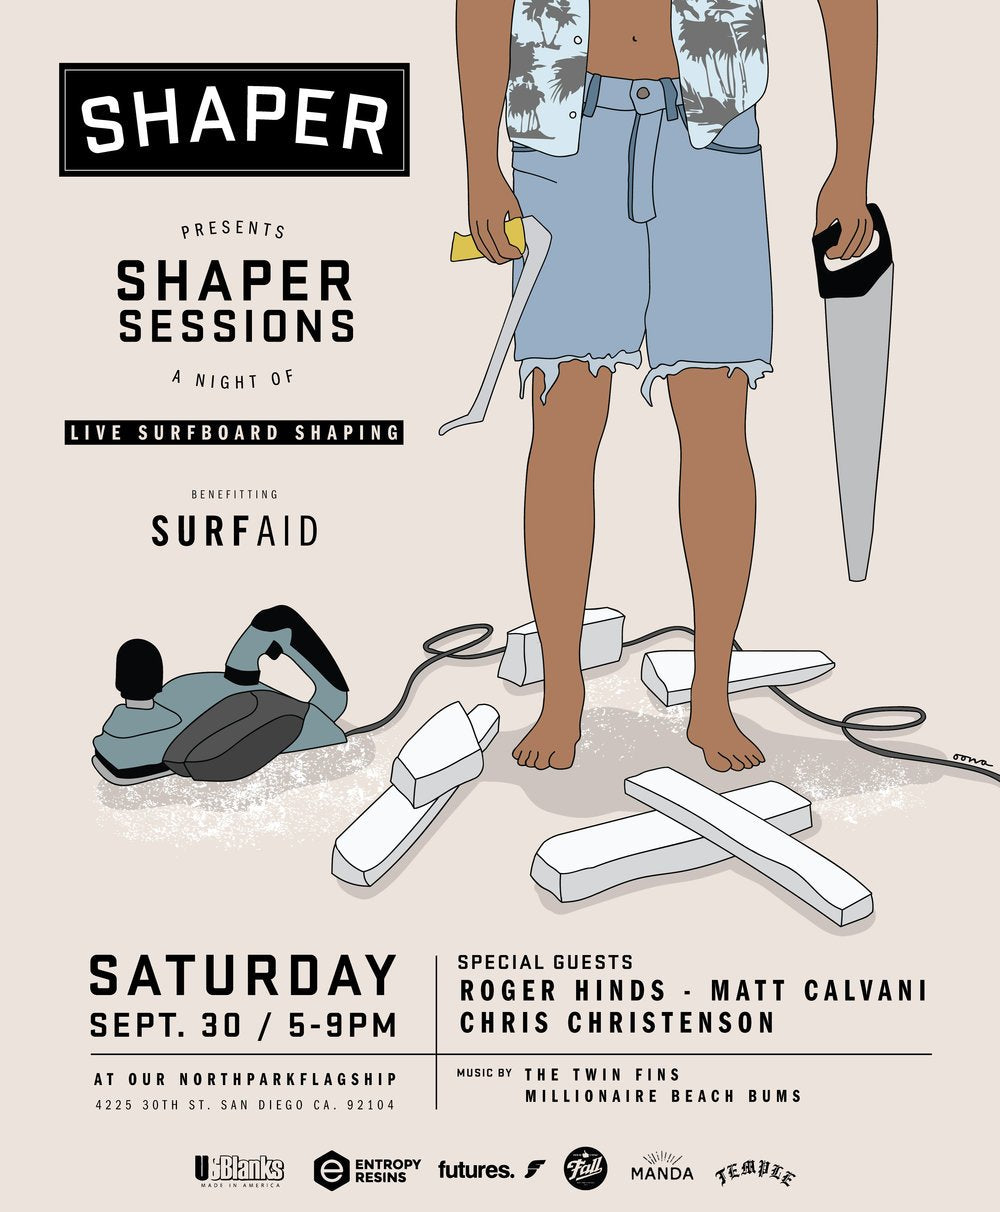 Shaper Studios presents ‘Shaper Sessions’ featuring Matt Calvani